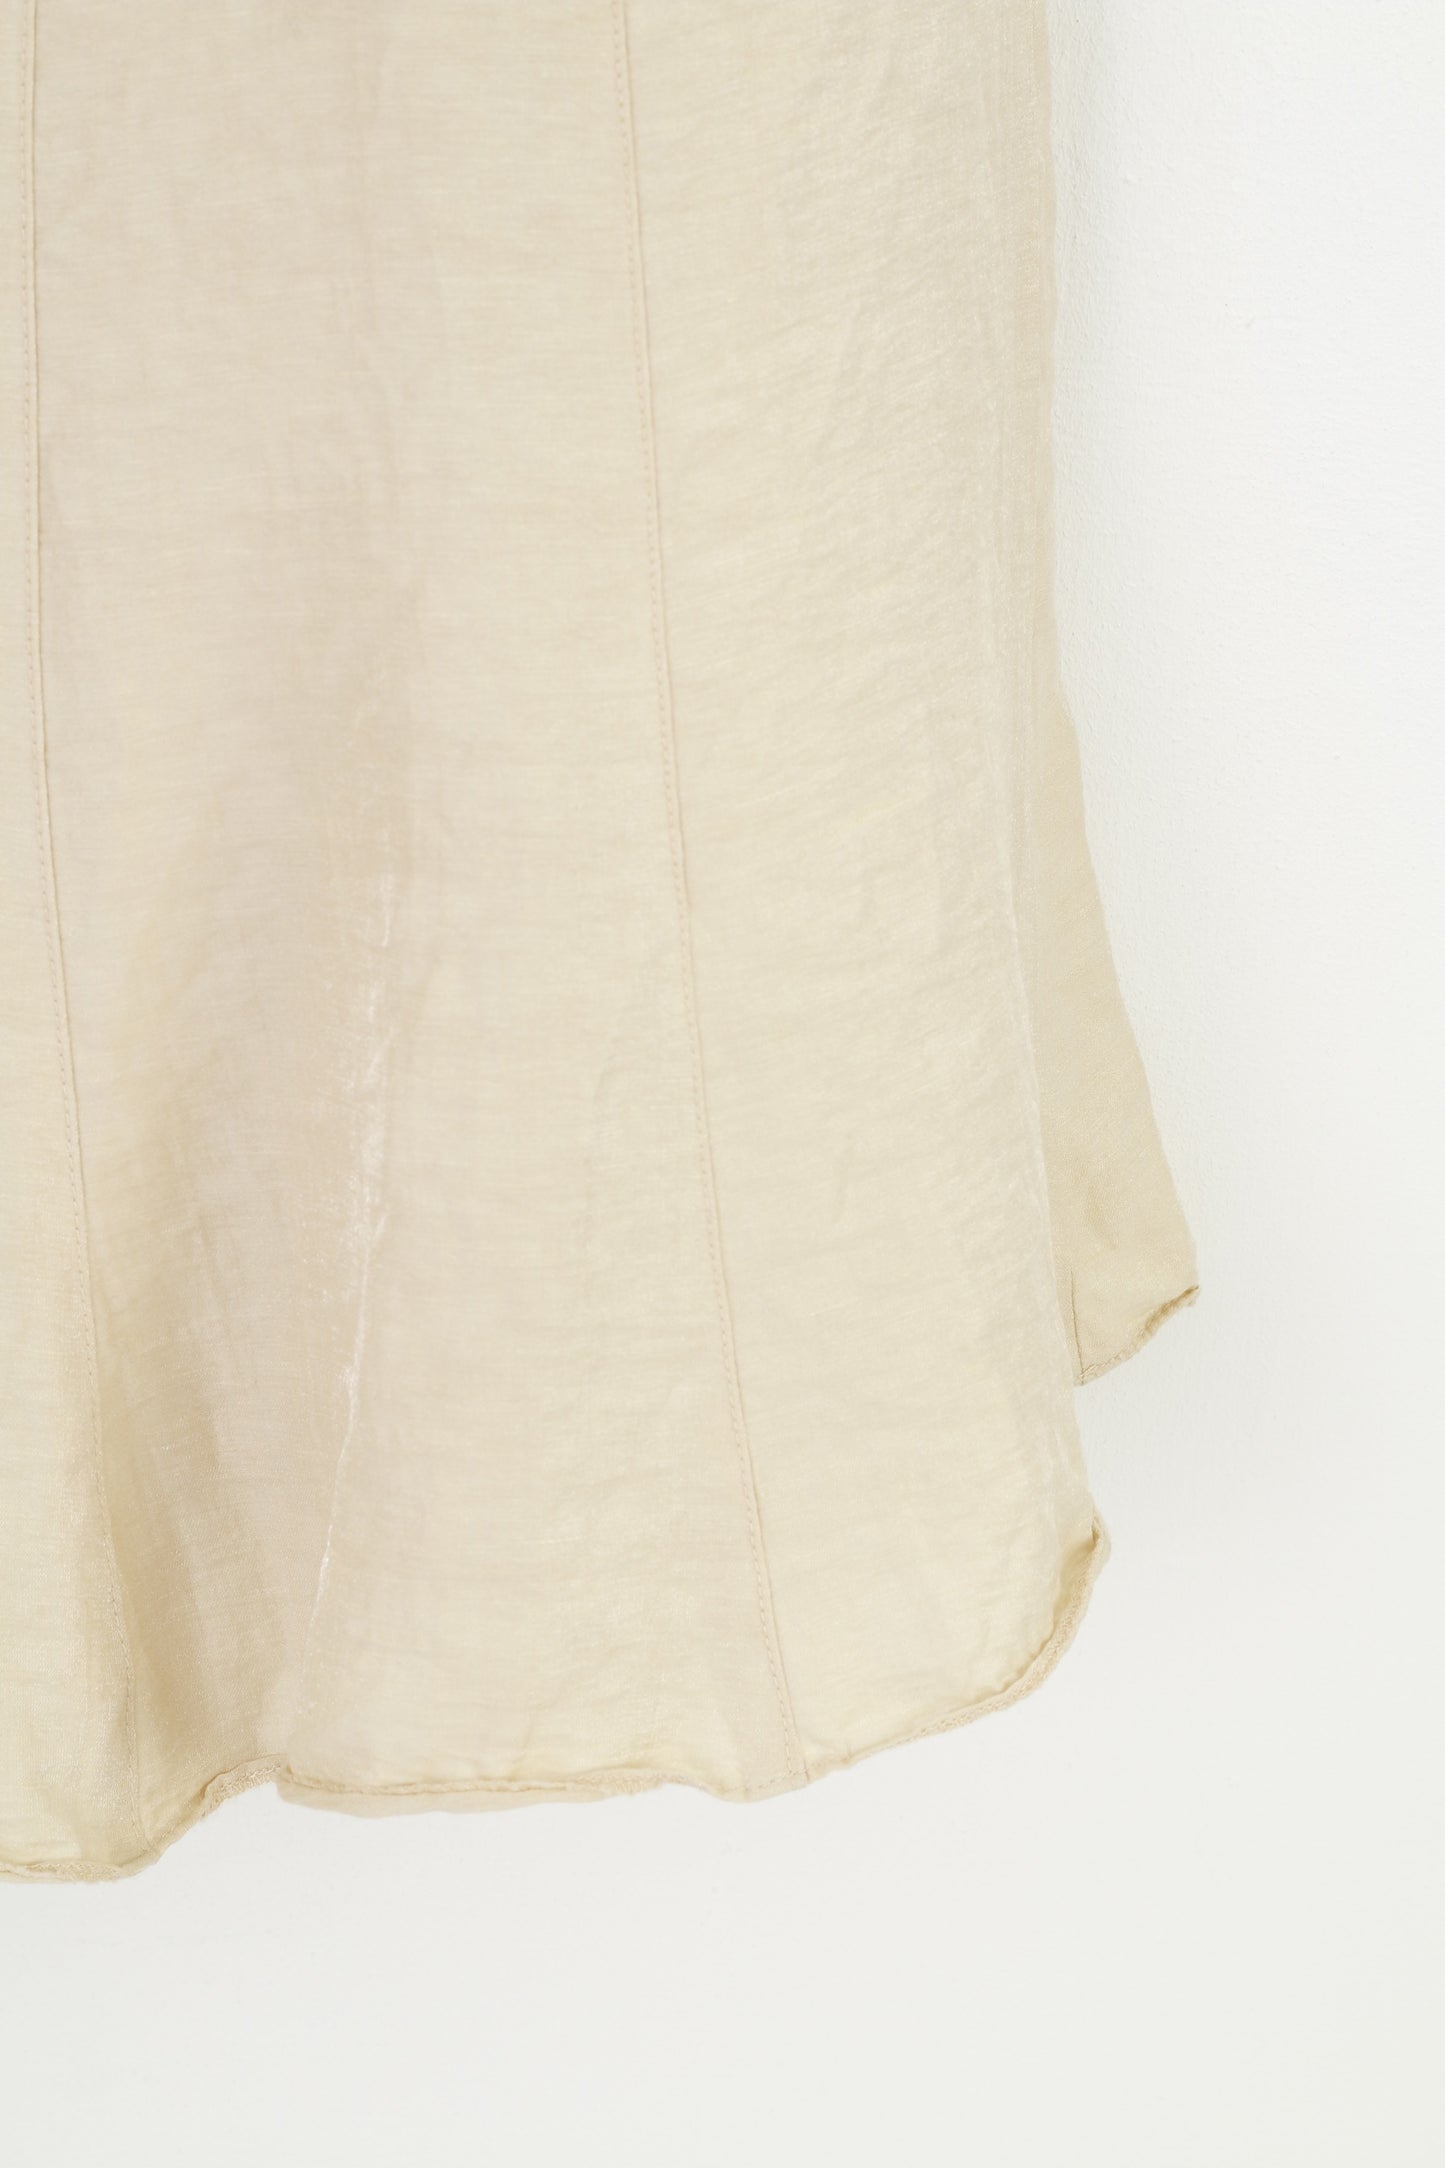 Crisca femmes 18 XL jupe crème été a-ligne plissée brillant lin fermeture éclair Vintage